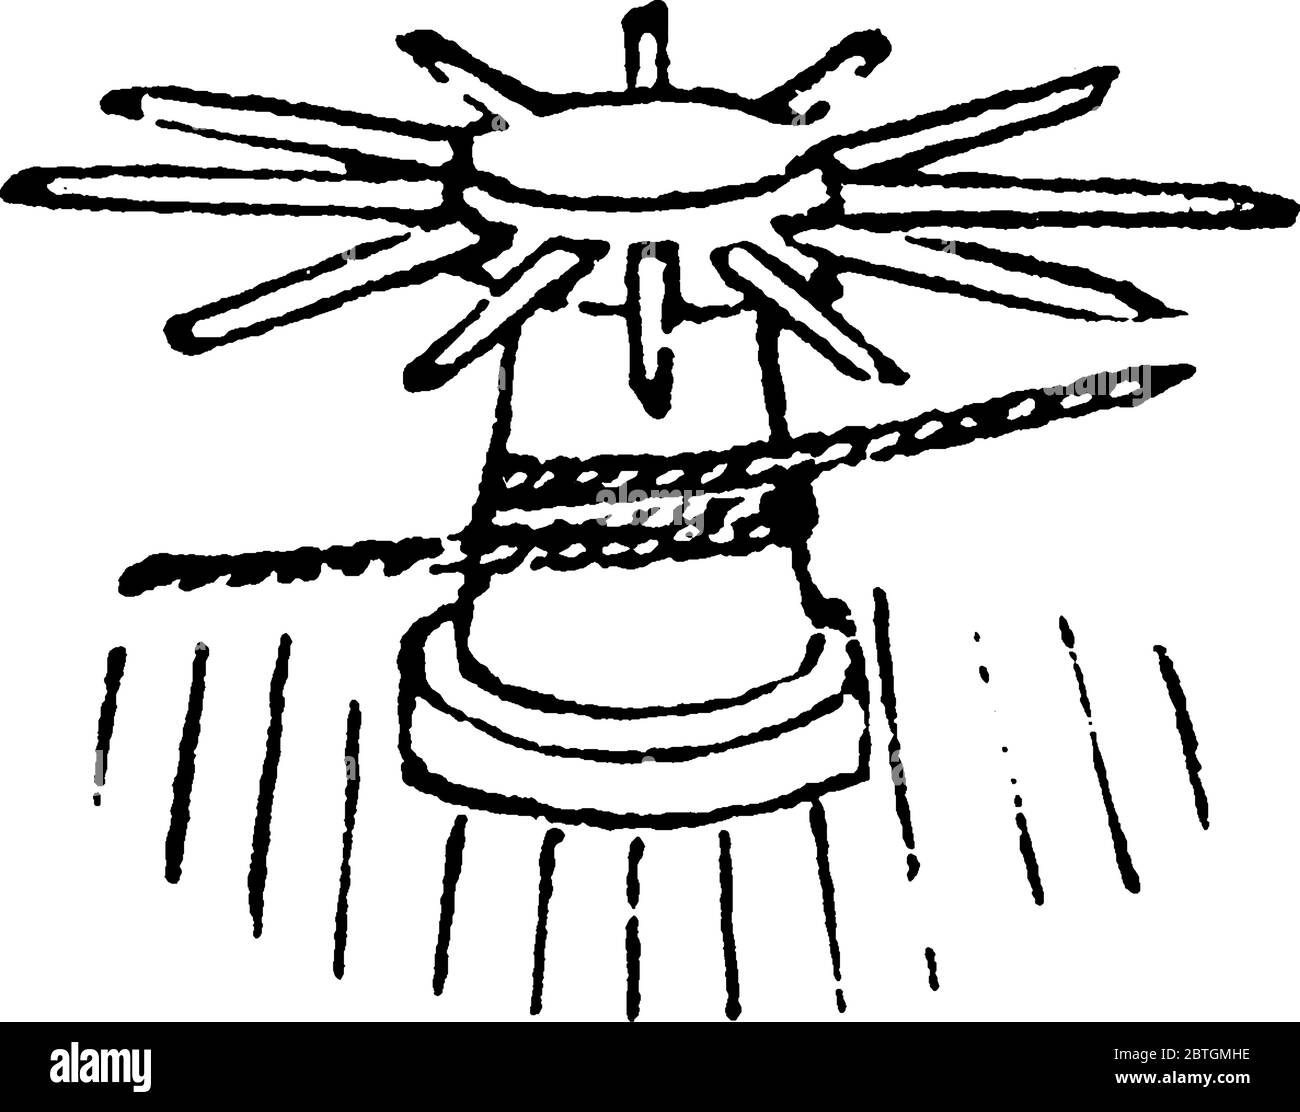 Illustration d'un cylindre rotatif large avec un axe vertical utilisé pour enrouler une corde, dessin de ligne vintage ou illustration de gravure. Illustration de Vecteur